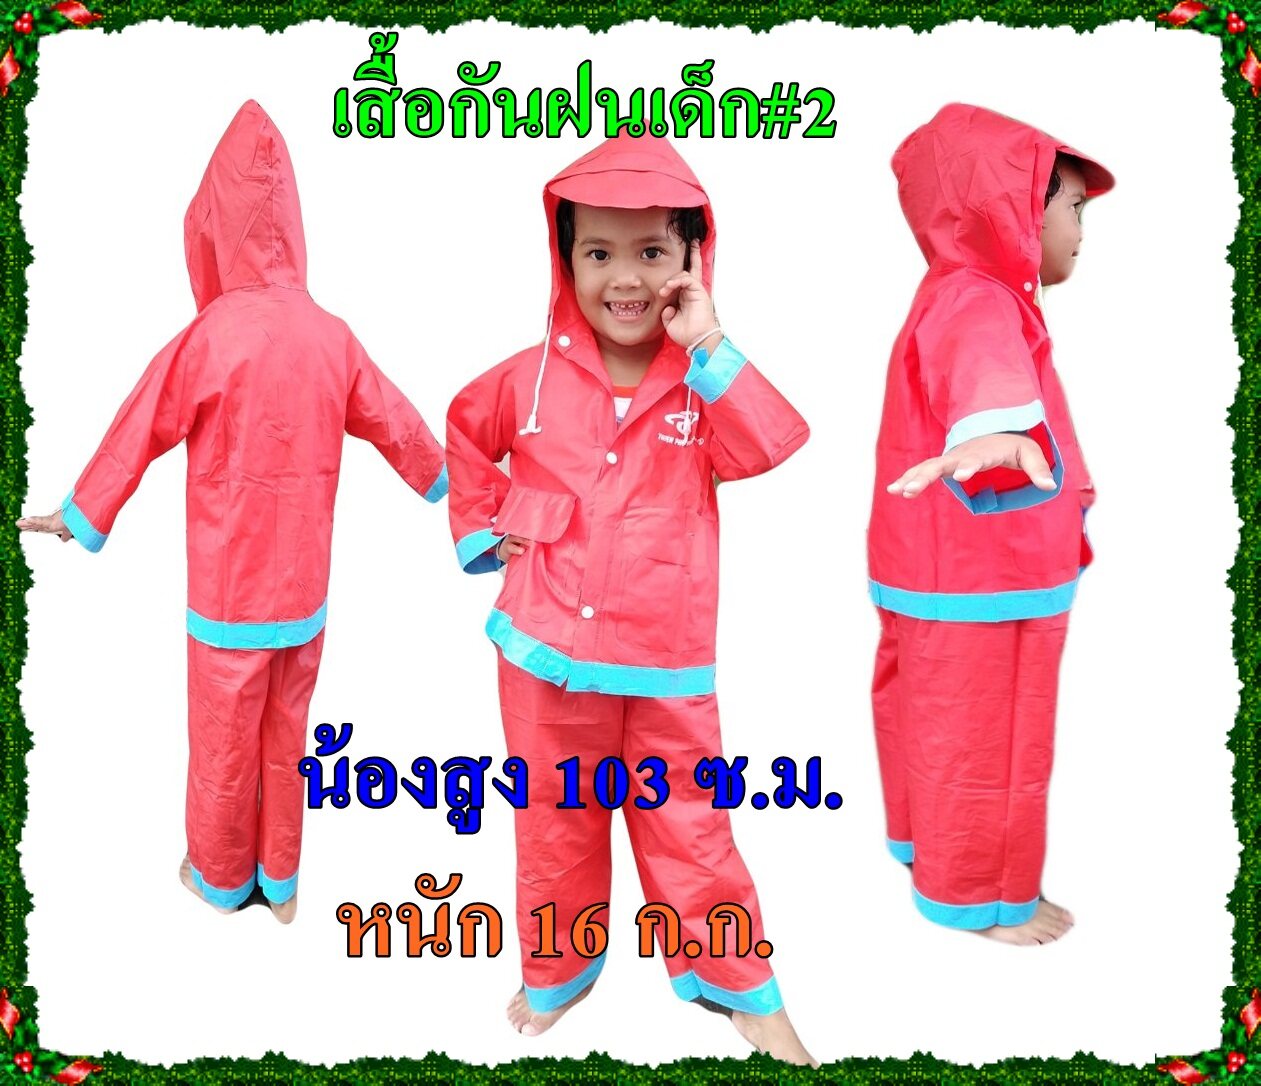 ใหม่!!! เสื้อกันฝนสำหรับเด็ก ผ้าหนาแยกส่วนเสื้อและกางเกง ใส่ได้ทั้งเด็กผู้ชายและเด็กผู้หญิง มีหลายสีให้เลือก #ชุดกันฝนเด็ก Size 2 #AS0065#